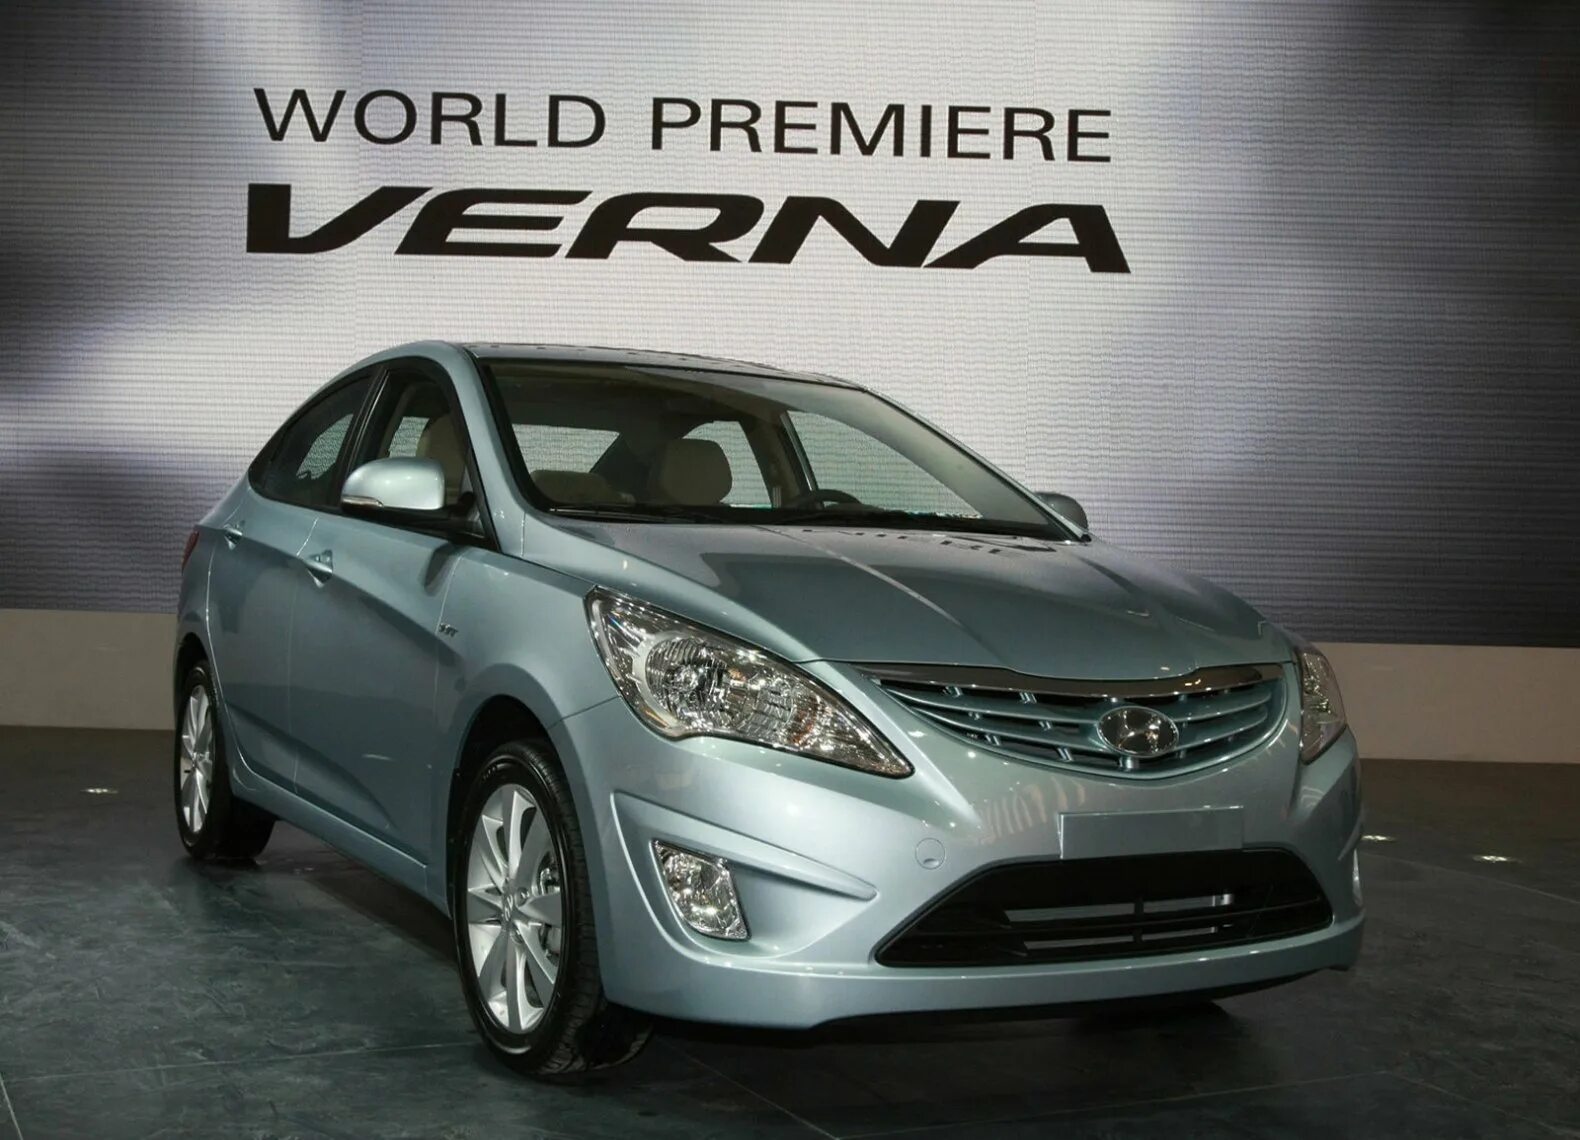 Купить хендай верну. Hyundai Verna 2011. Hyundai Accent 2011. Hunday Verna. Hyundai Solaris/Accent/Verna (2010.